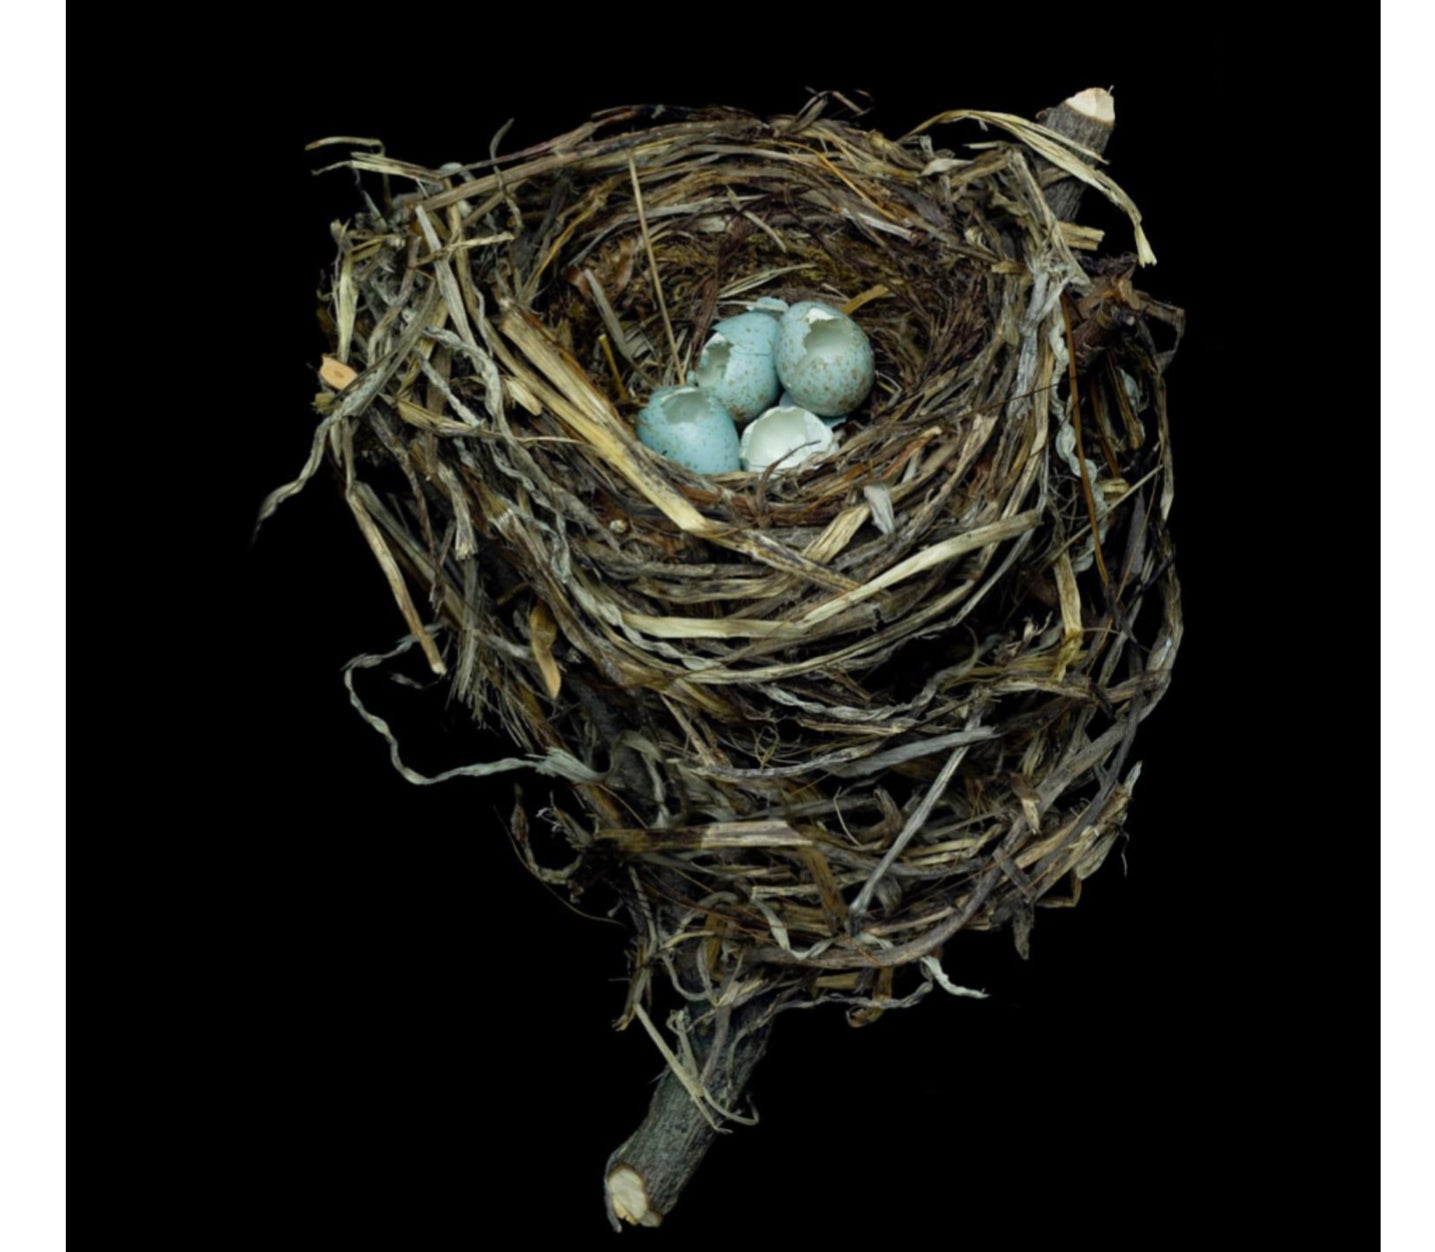 Sharon Beals Lithographie eines Swainson's Thrush Nest im Angebot